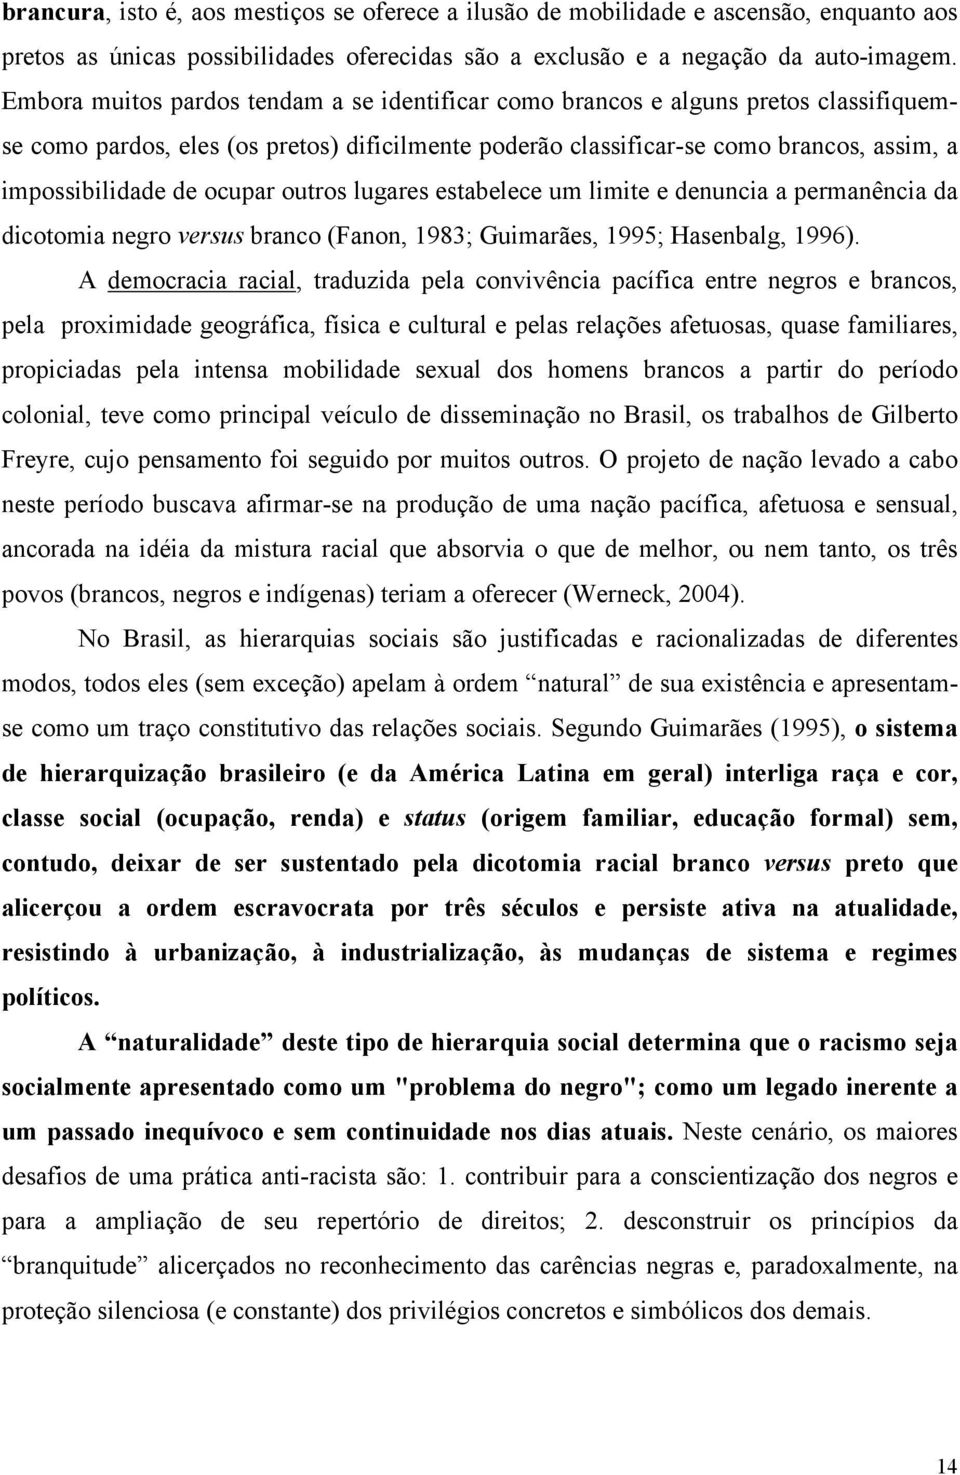 ocupar outros lugares estabelece um limite e denuncia a permanência da dicotomia negro versus branco (Fanon, 1983; Guimarães, 1995; Hasenbalg, 1996).